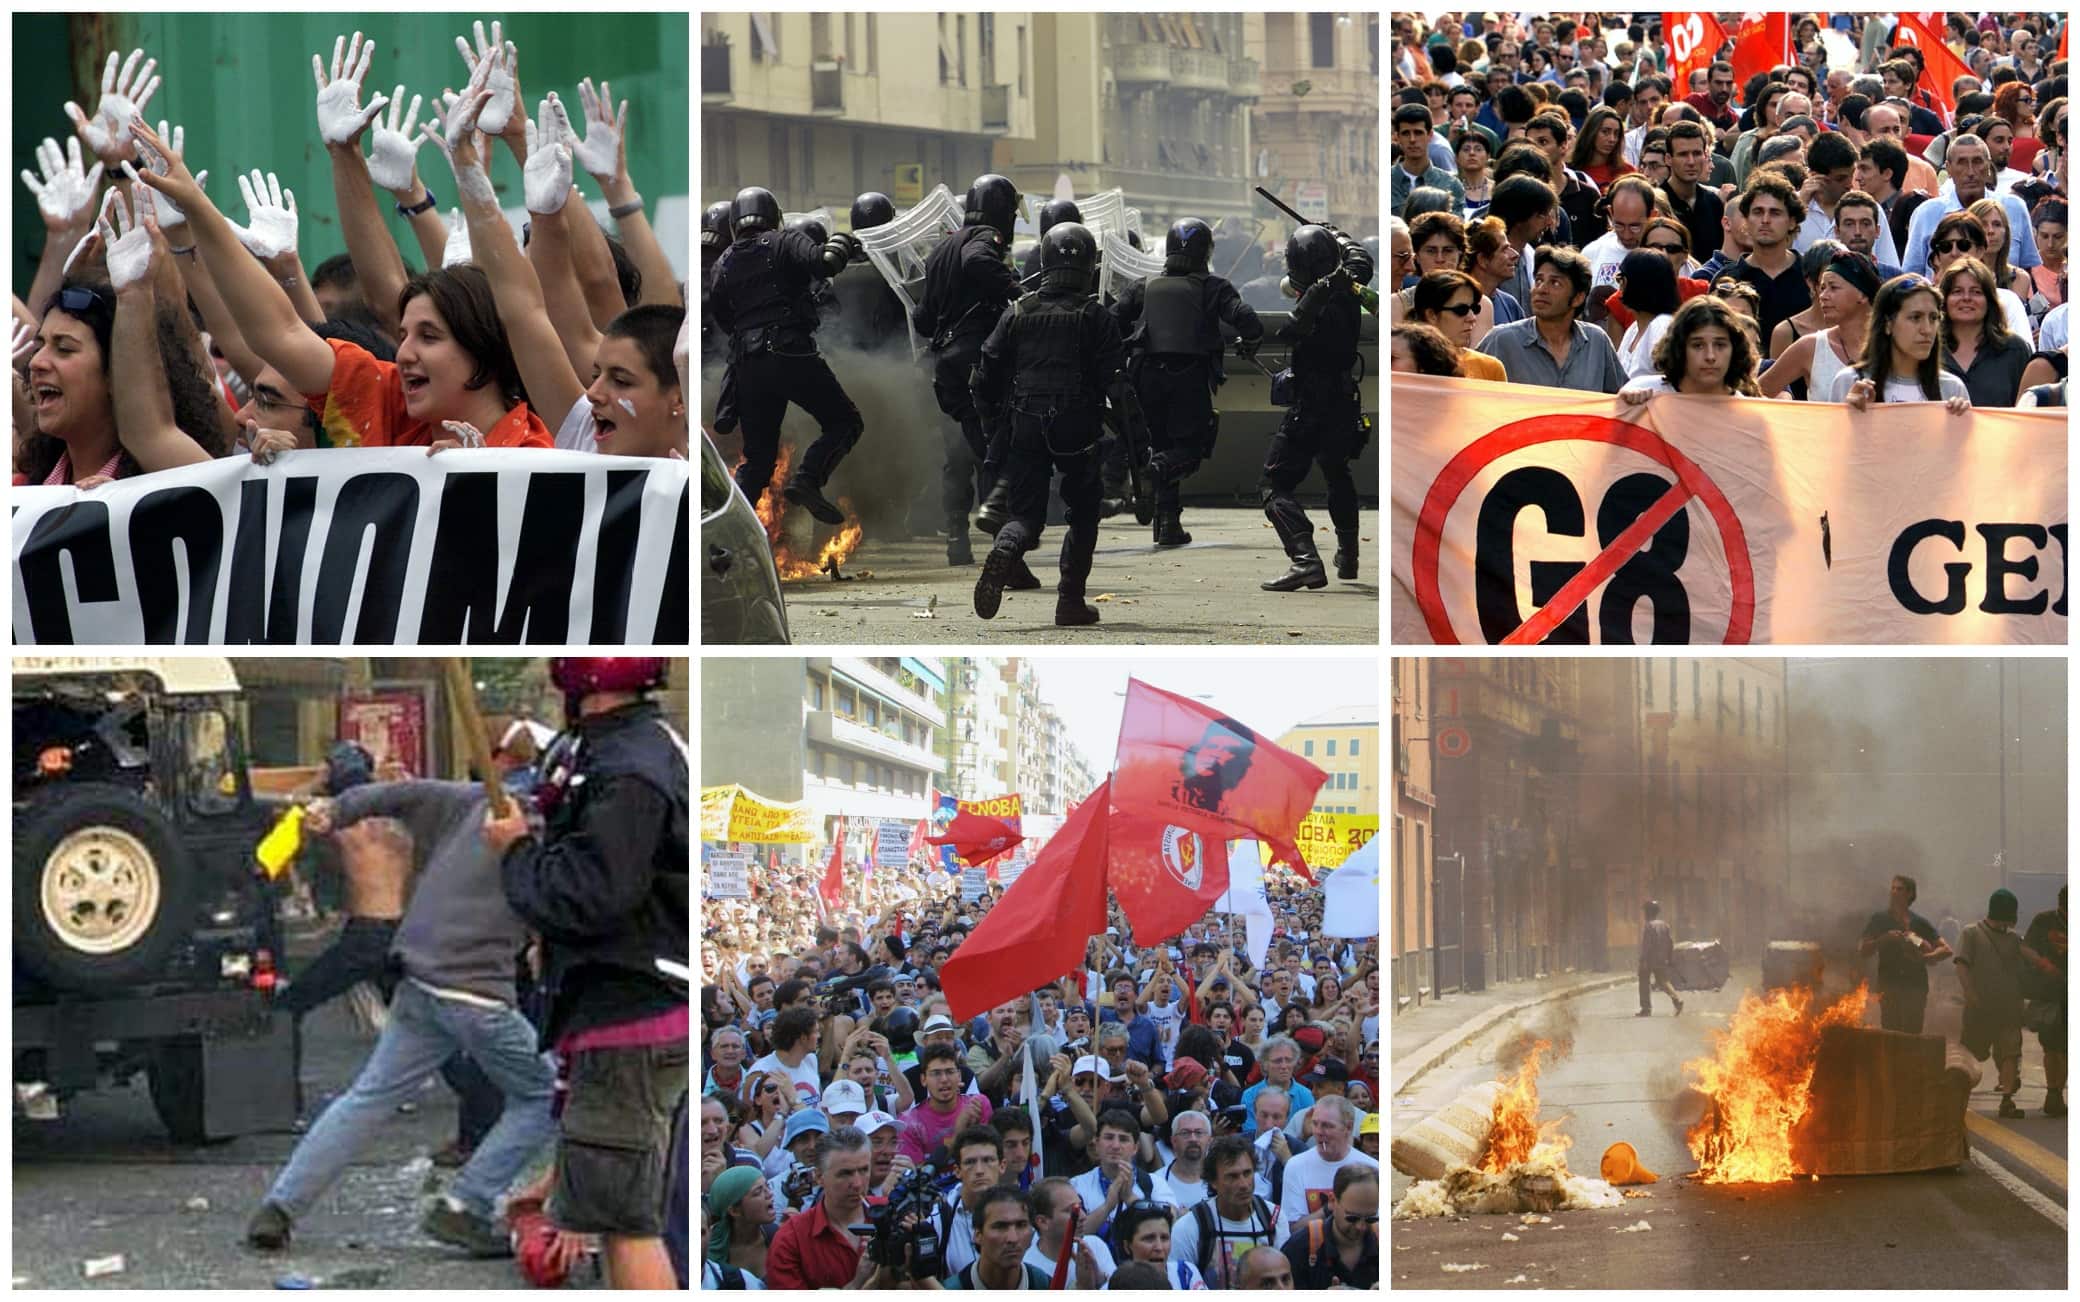 Proteste e scontri al G8 di Genova